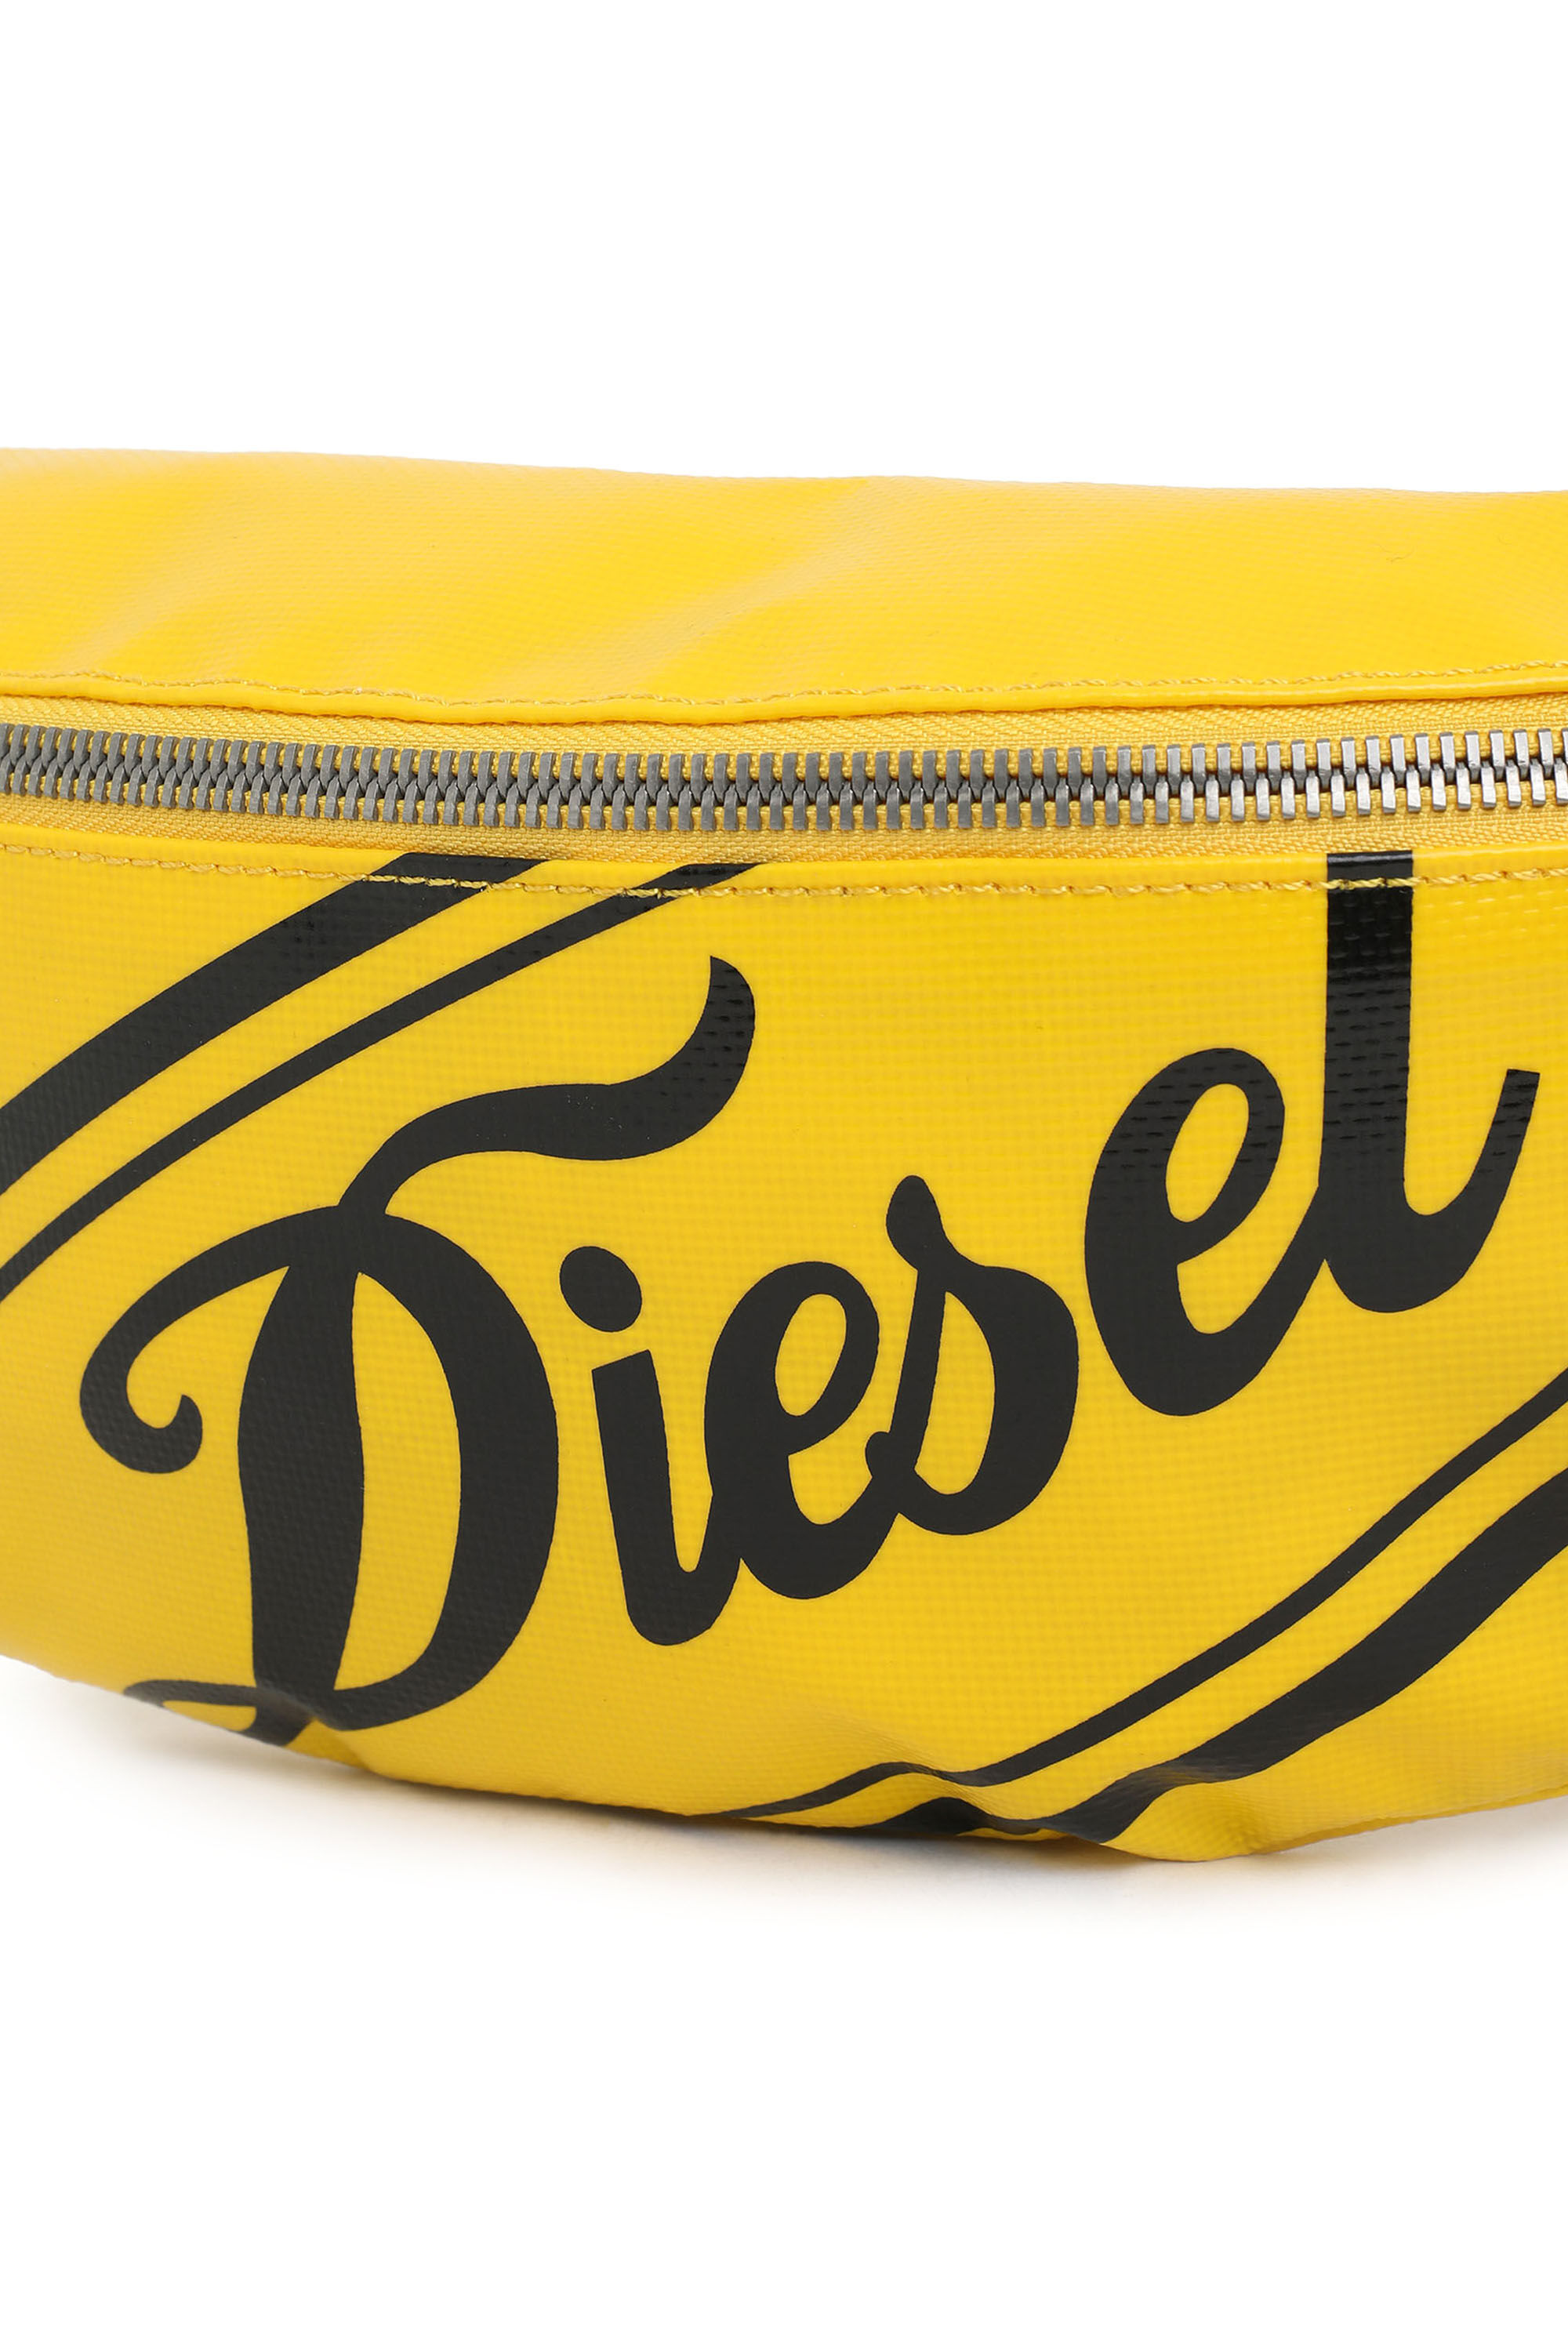 Diesel - ORFEI,  - Image 4